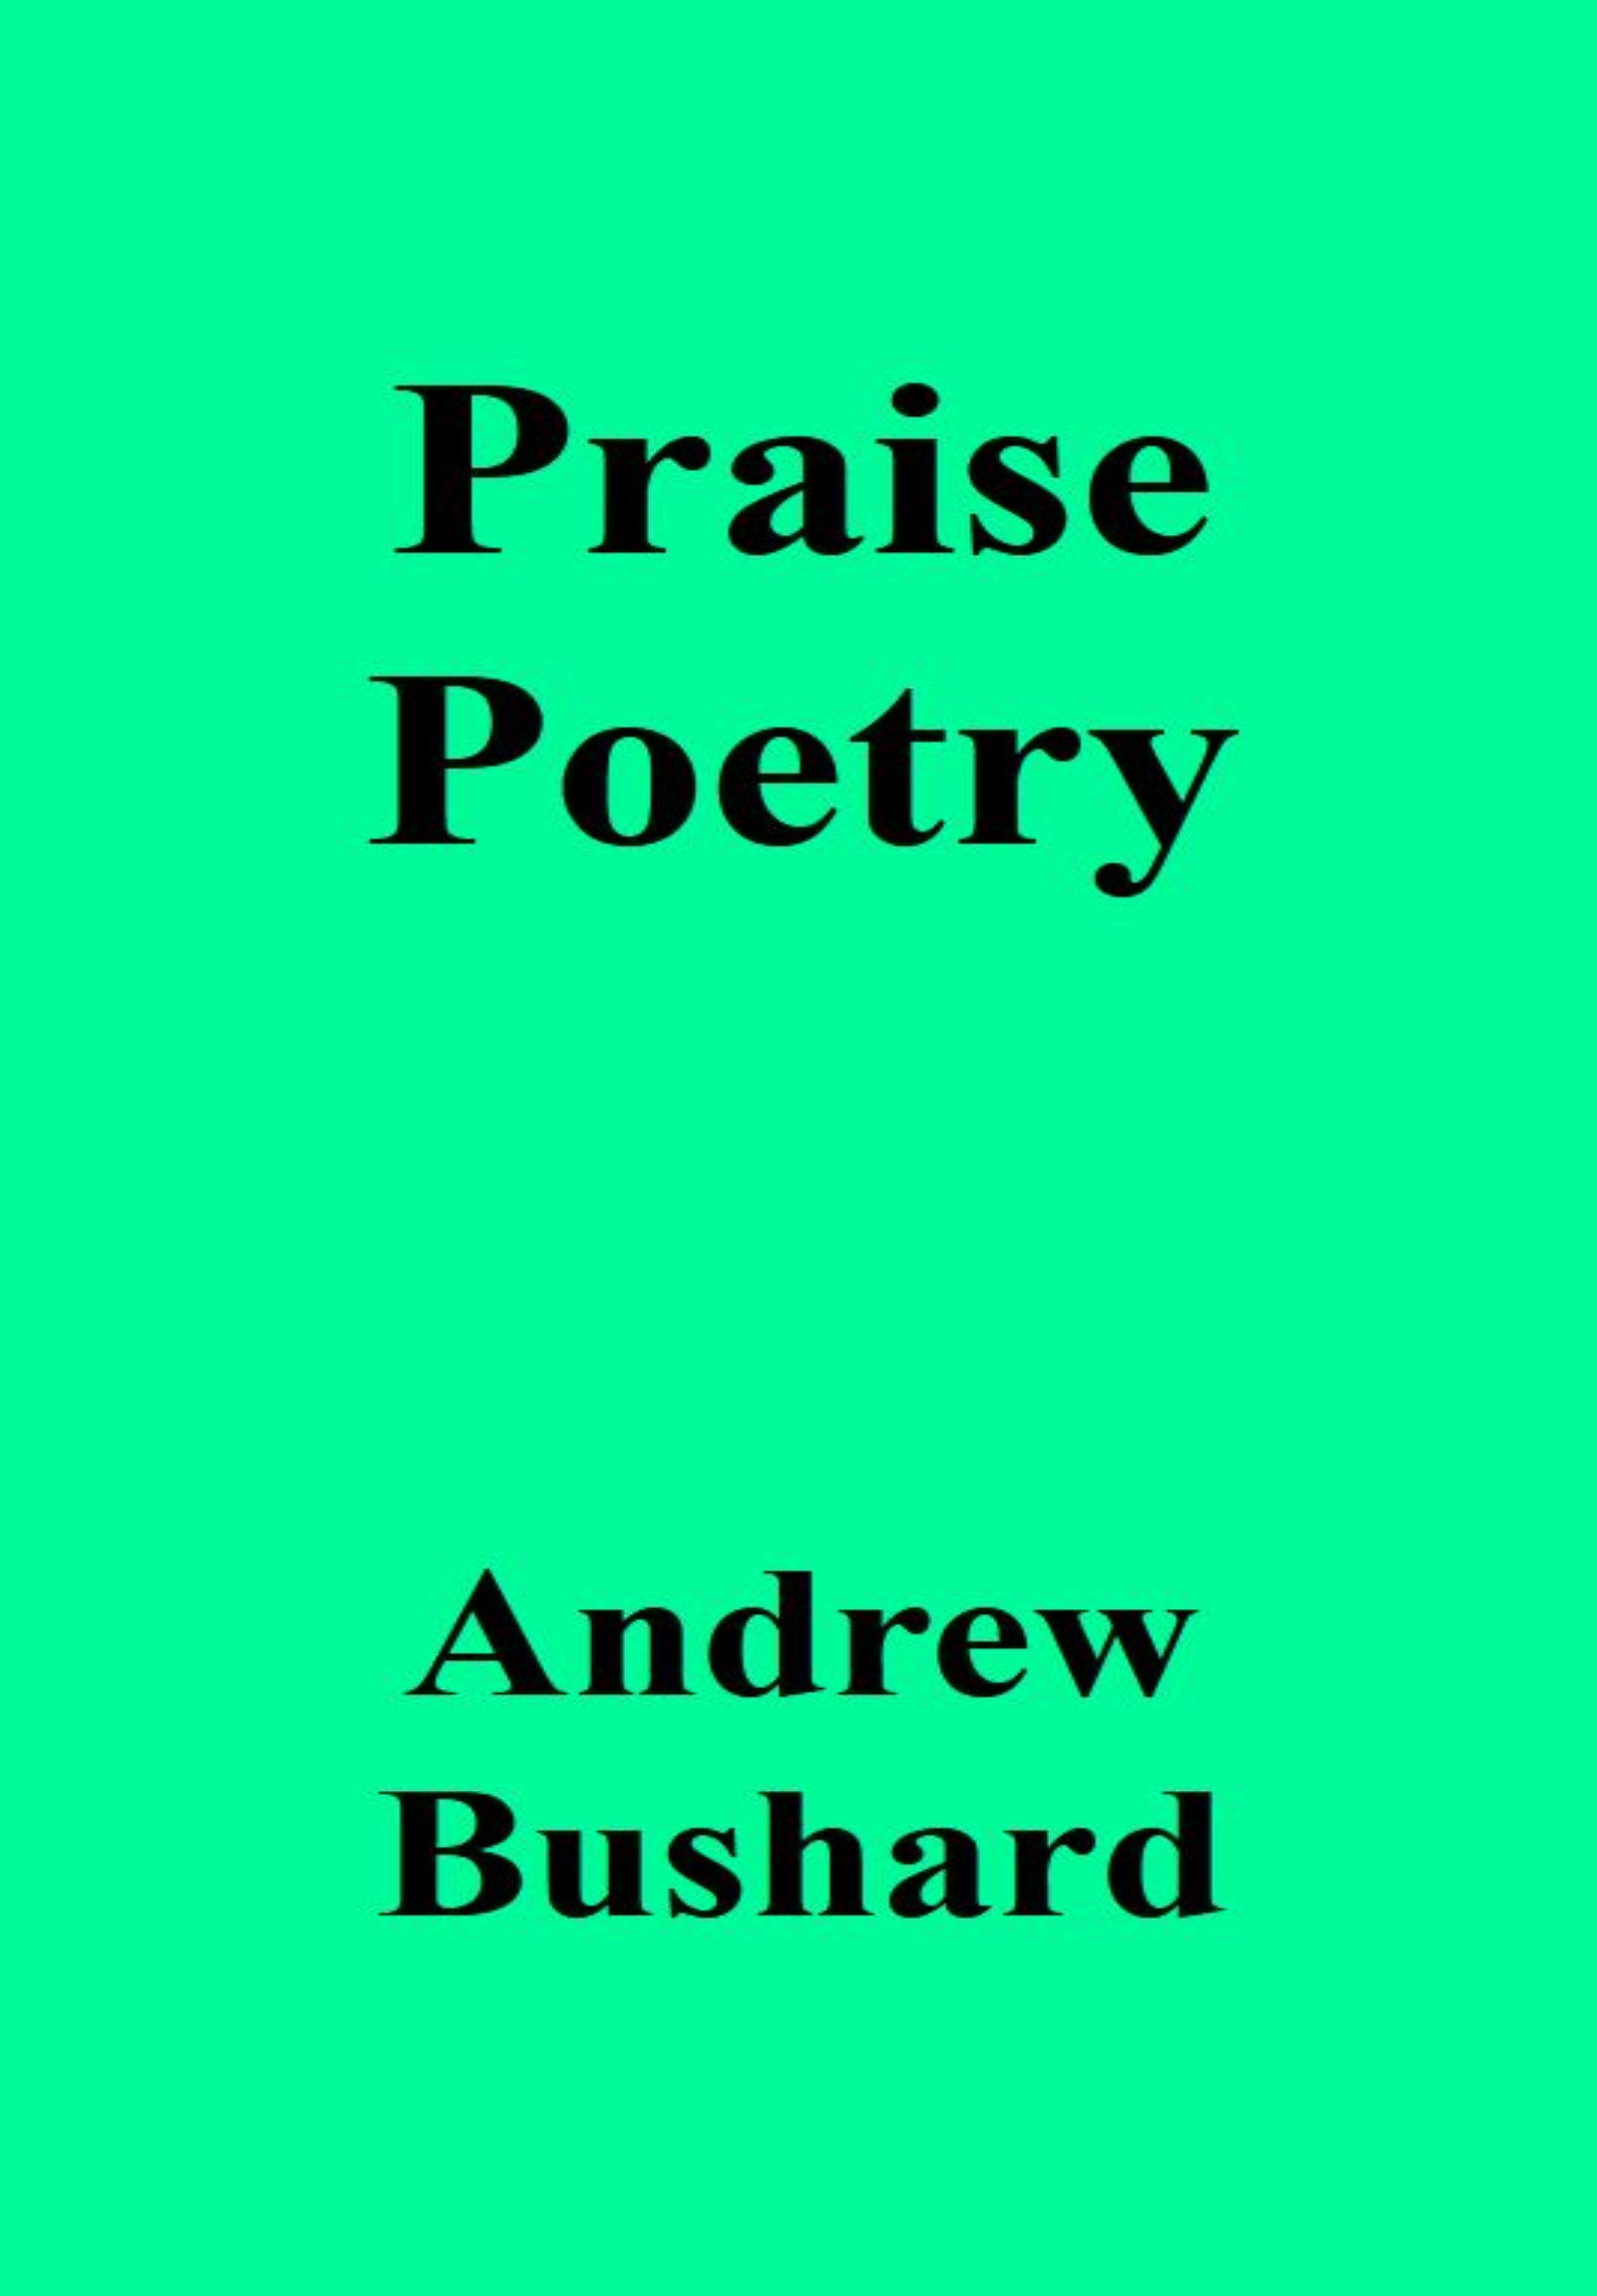 Praise Poetry Audiobook